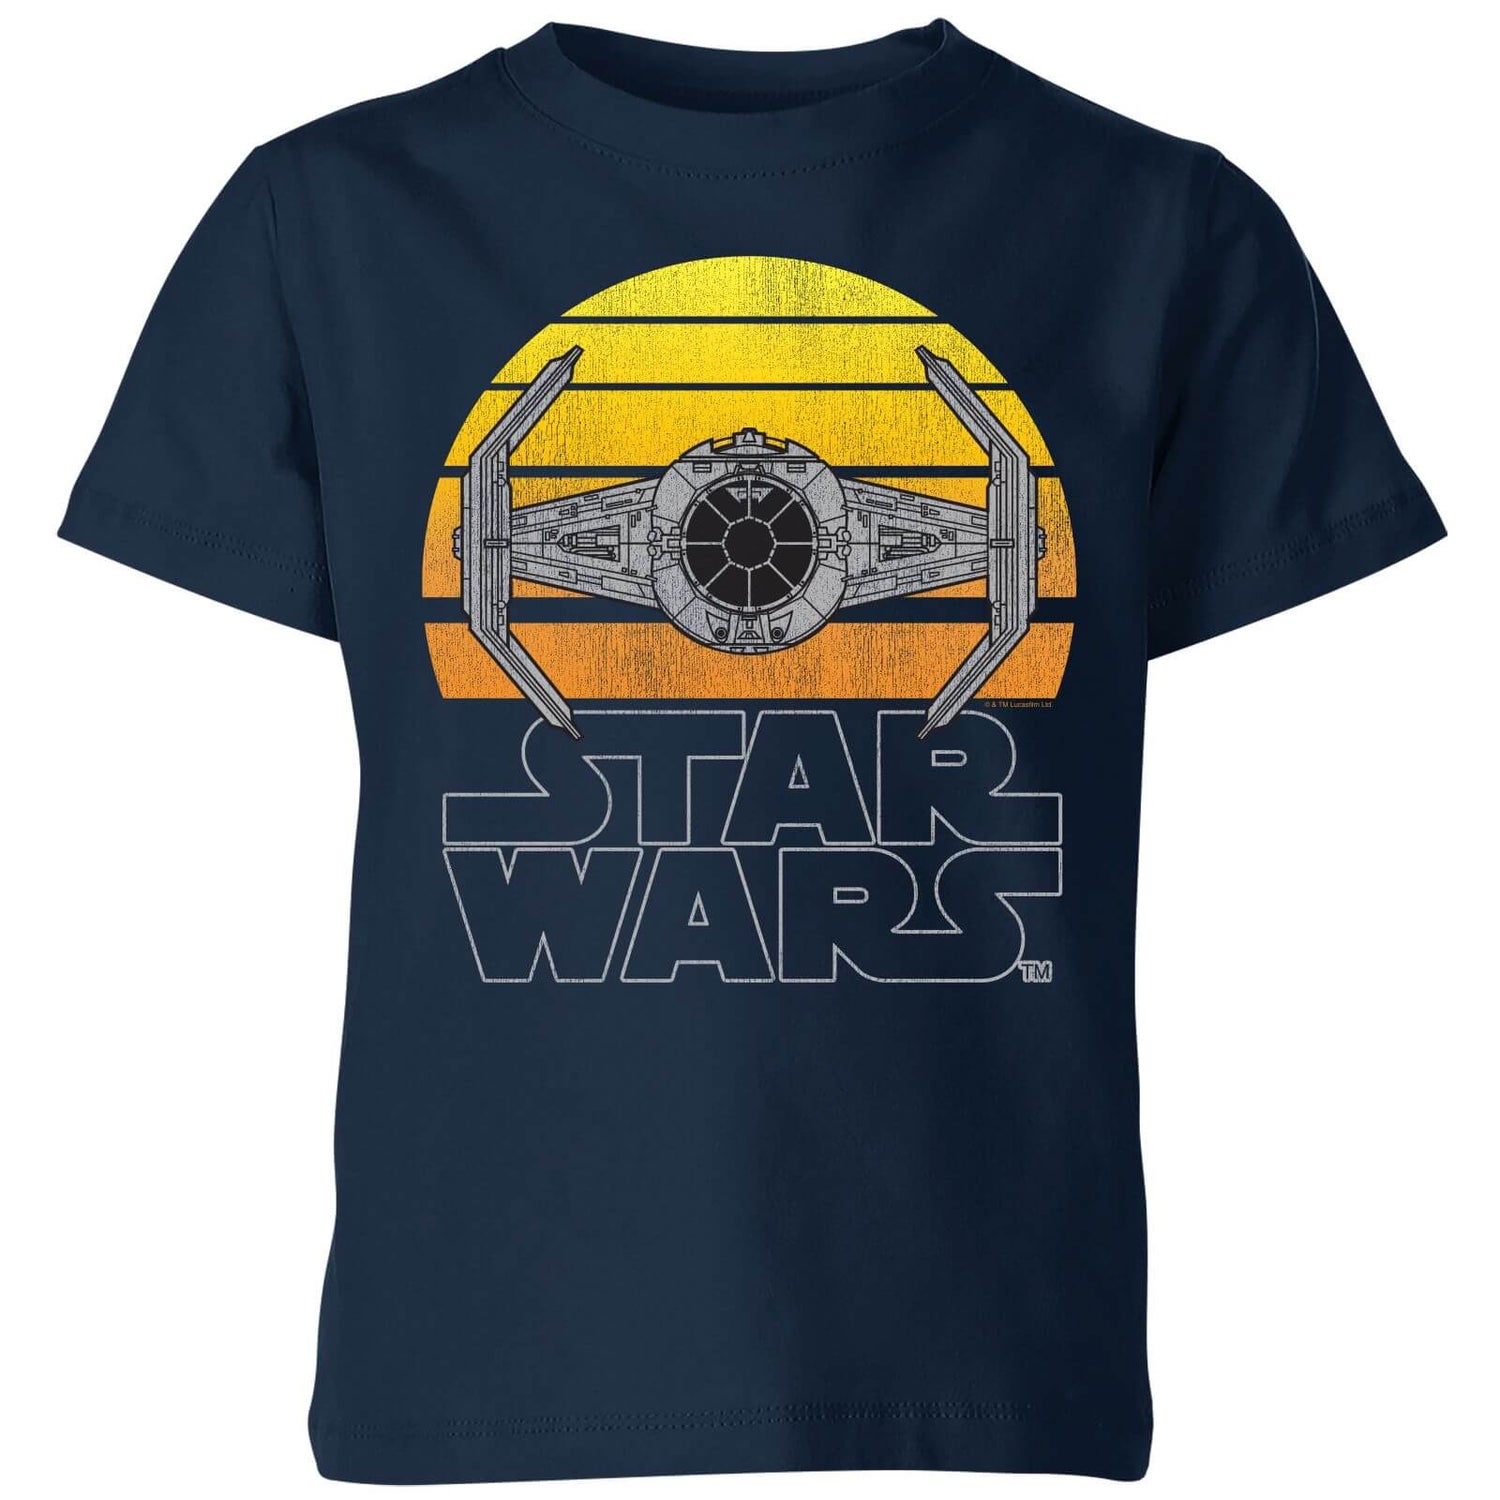 Star Wars Sunset Tie Kids' T-Shirt - Navy